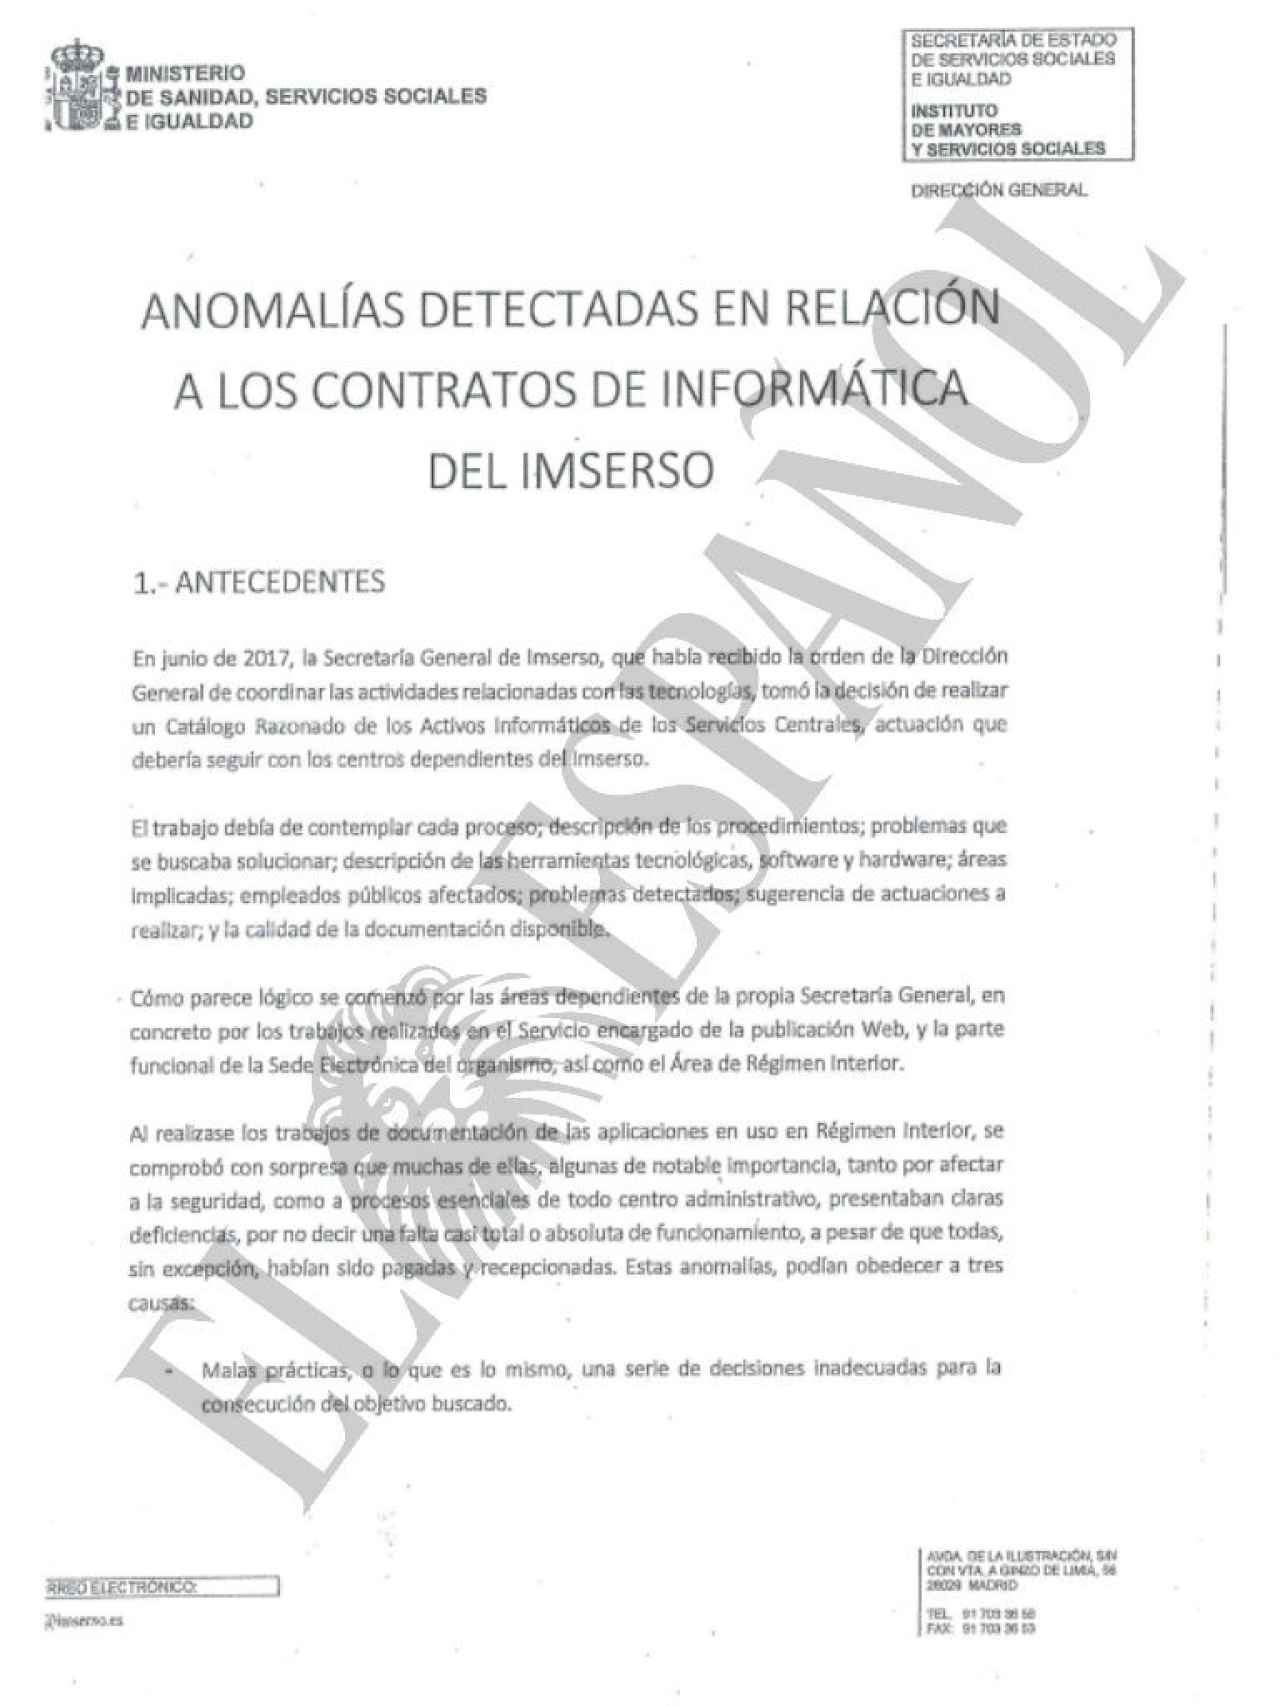 Primera página del informe sobre las presuntas irregularidades en los contratos del Imserso.